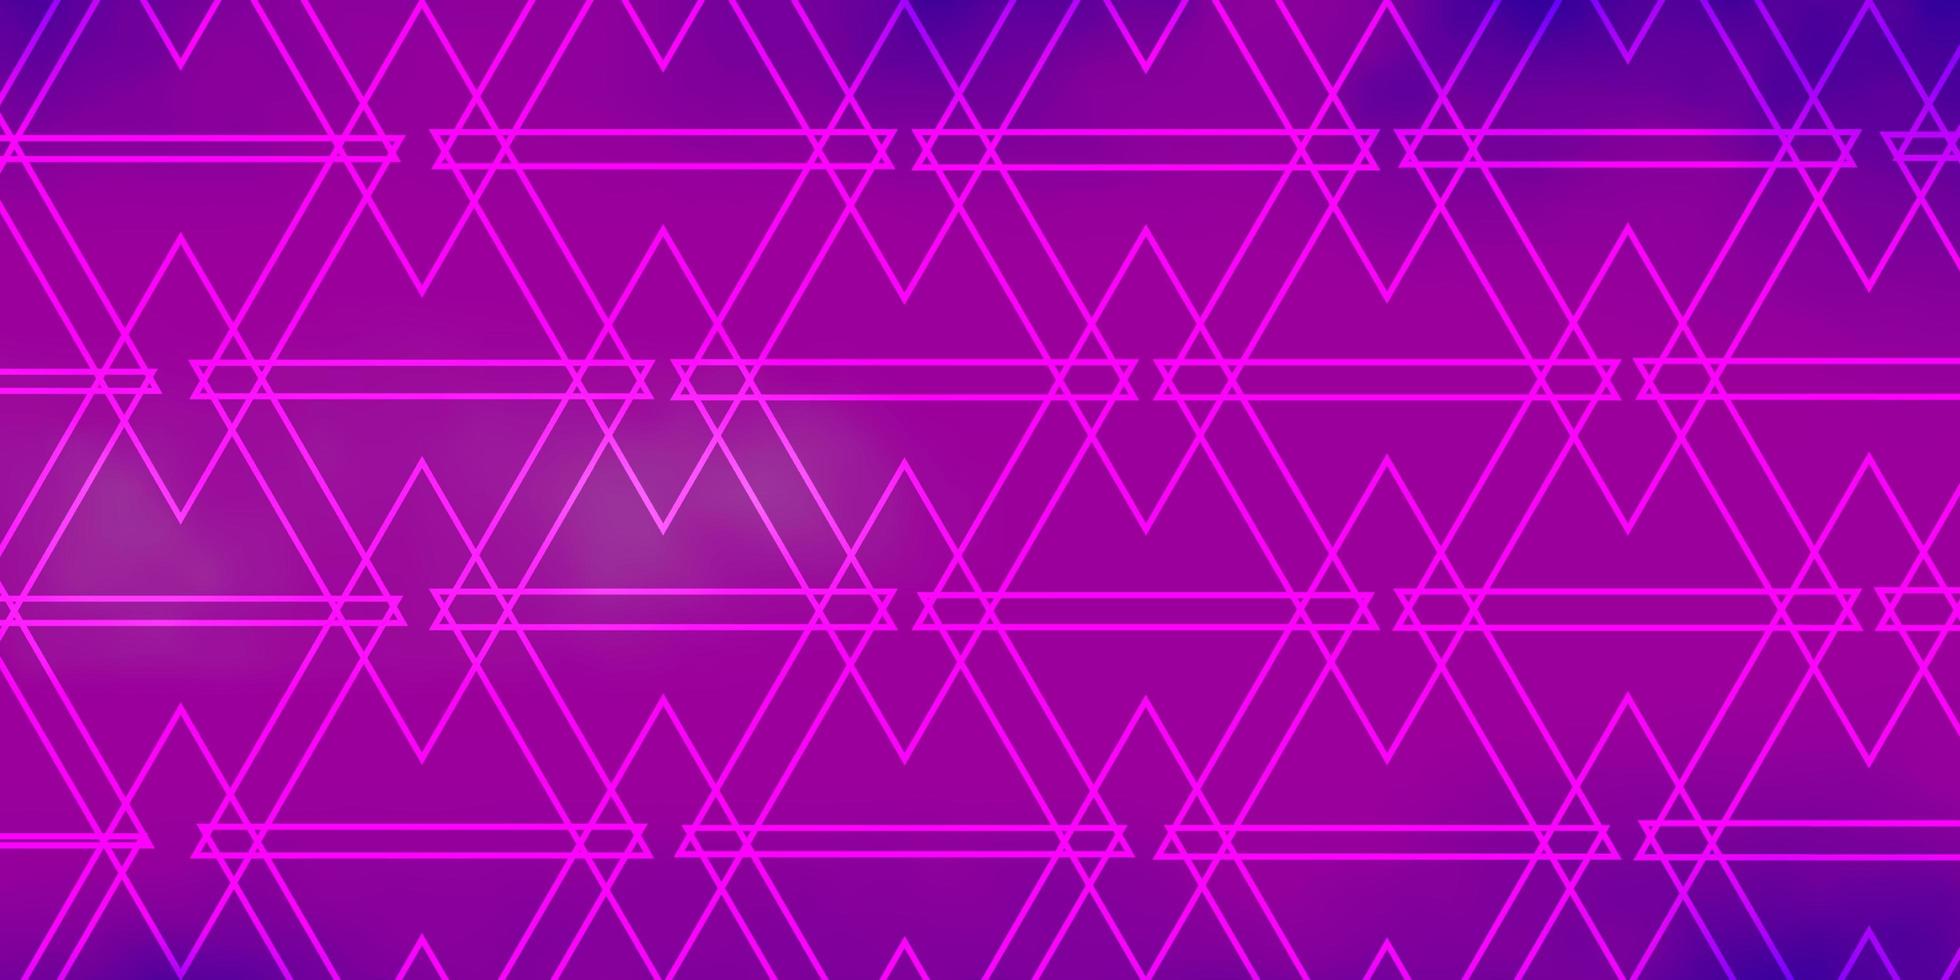 layout vettoriale viola chiaro, rosa con linee, triangoli.